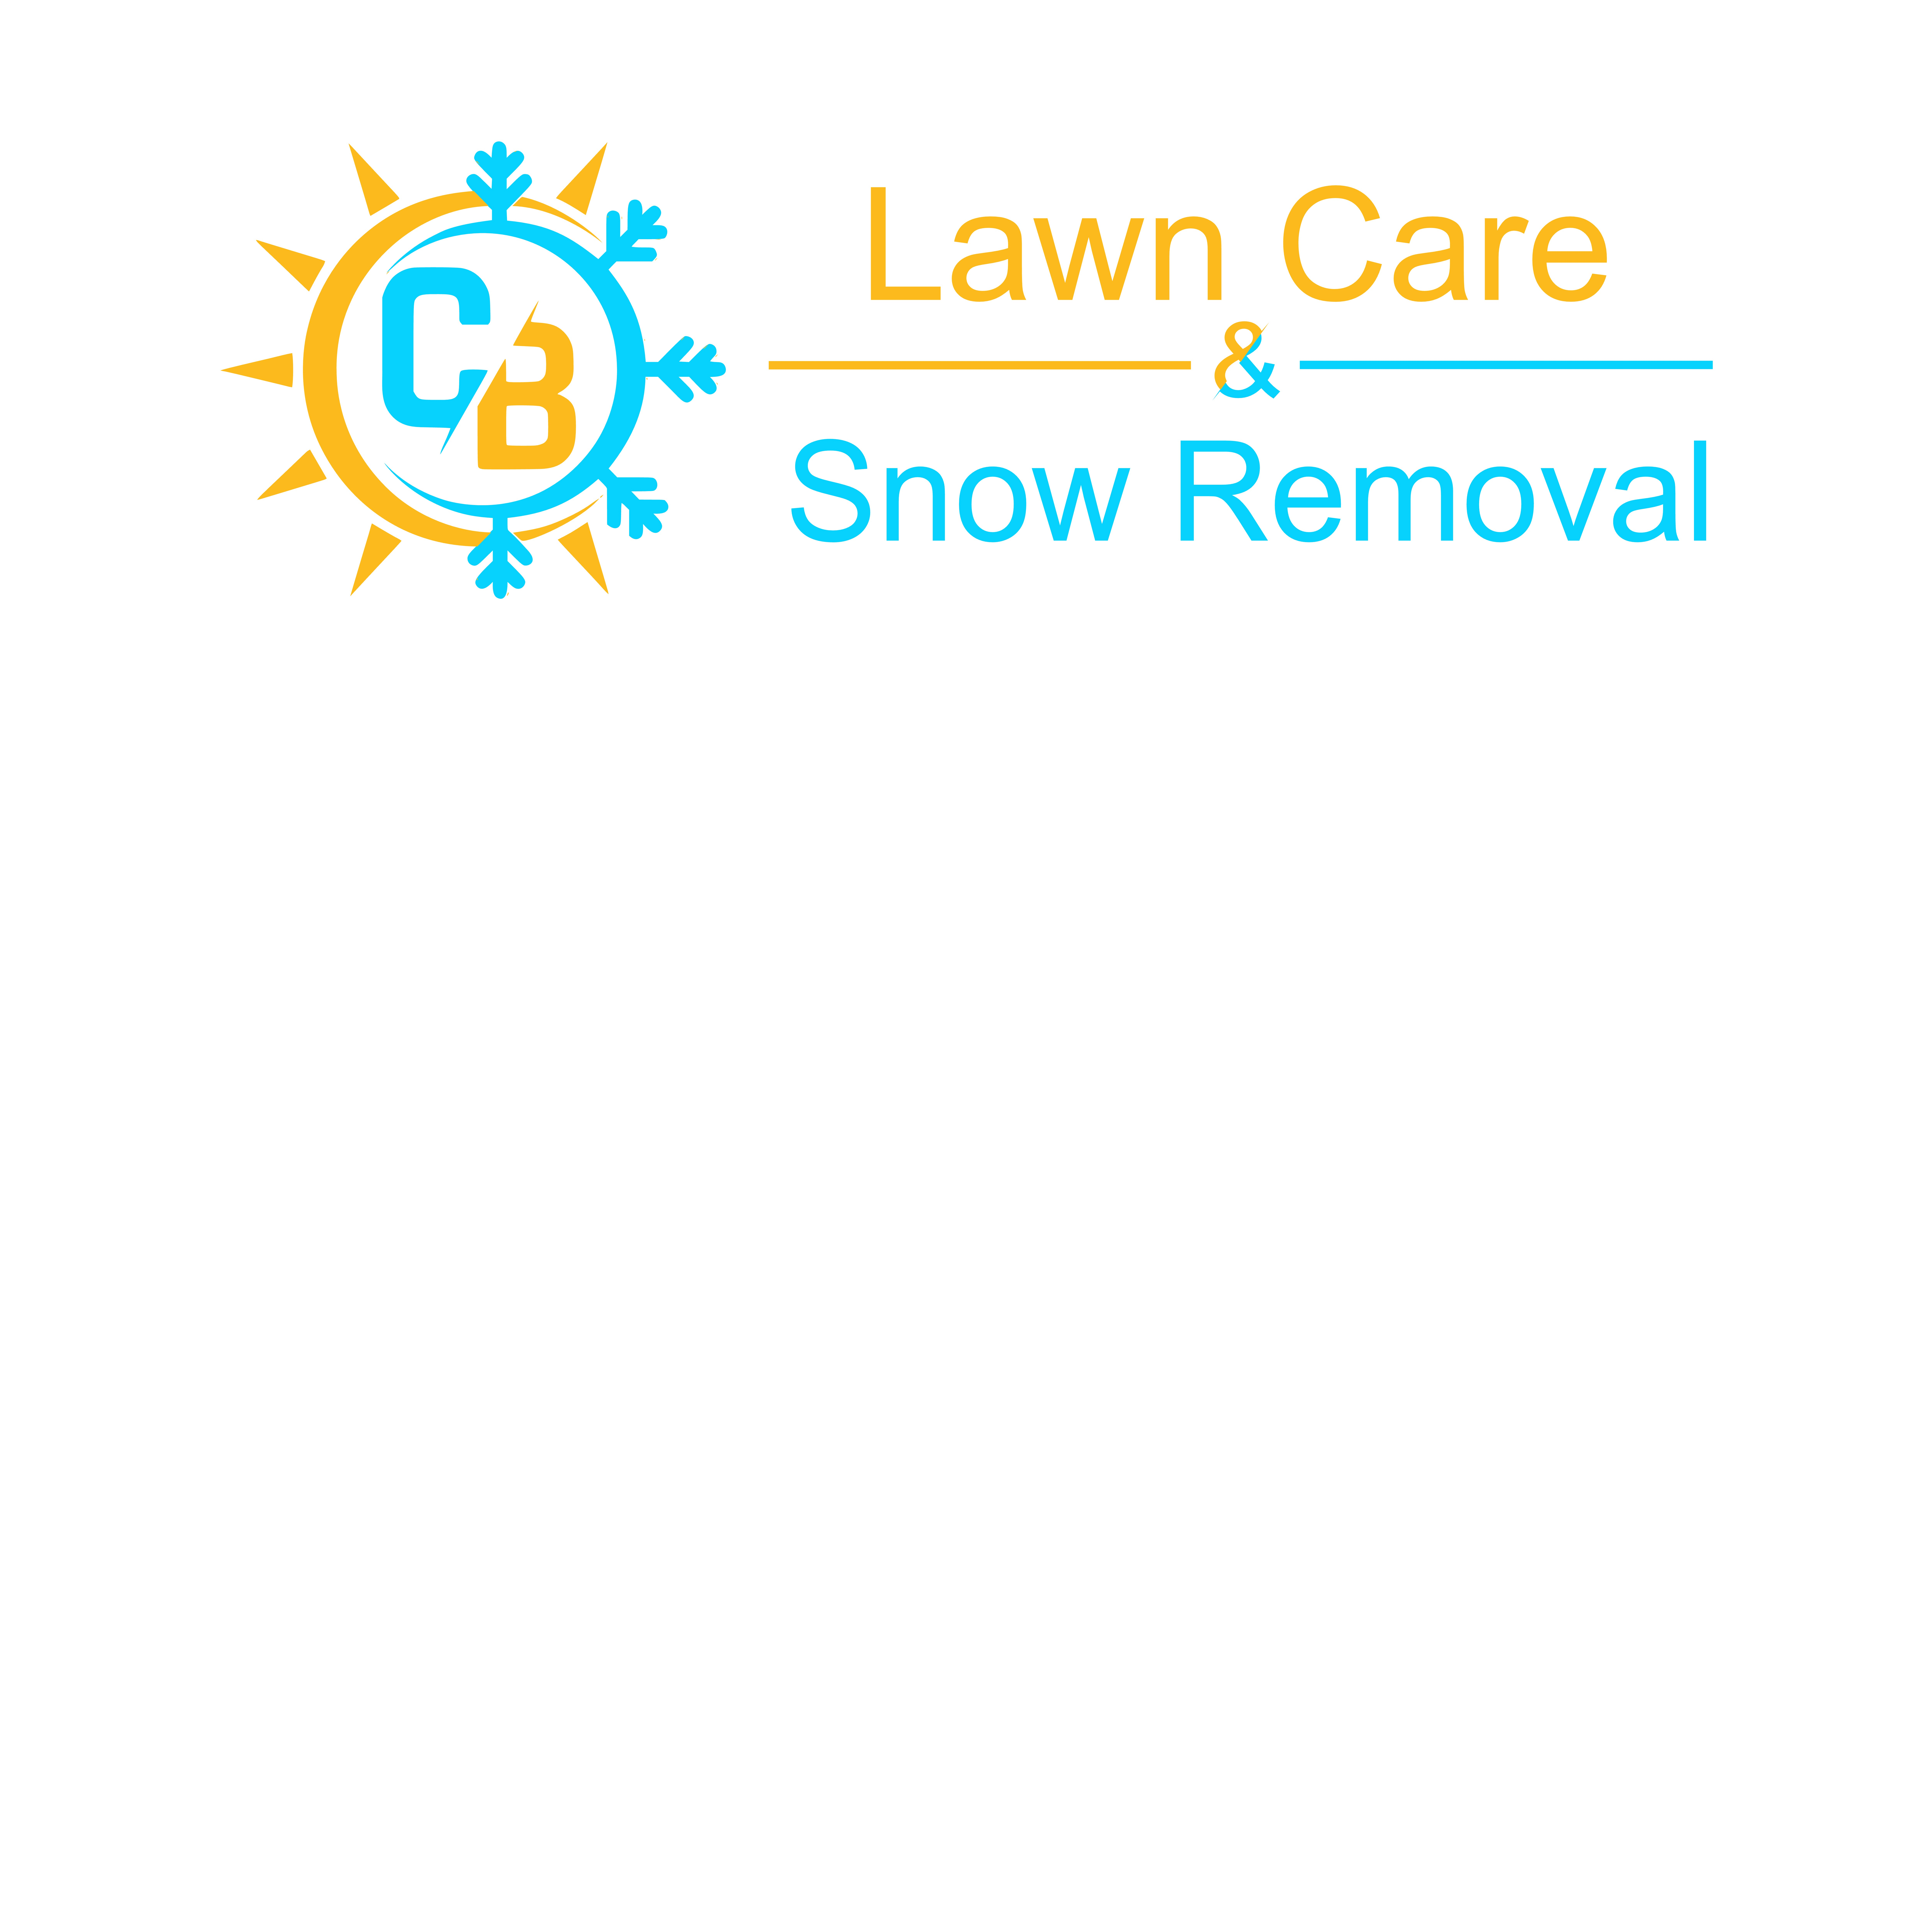 CB Lawn Care & Snow Removal Logo